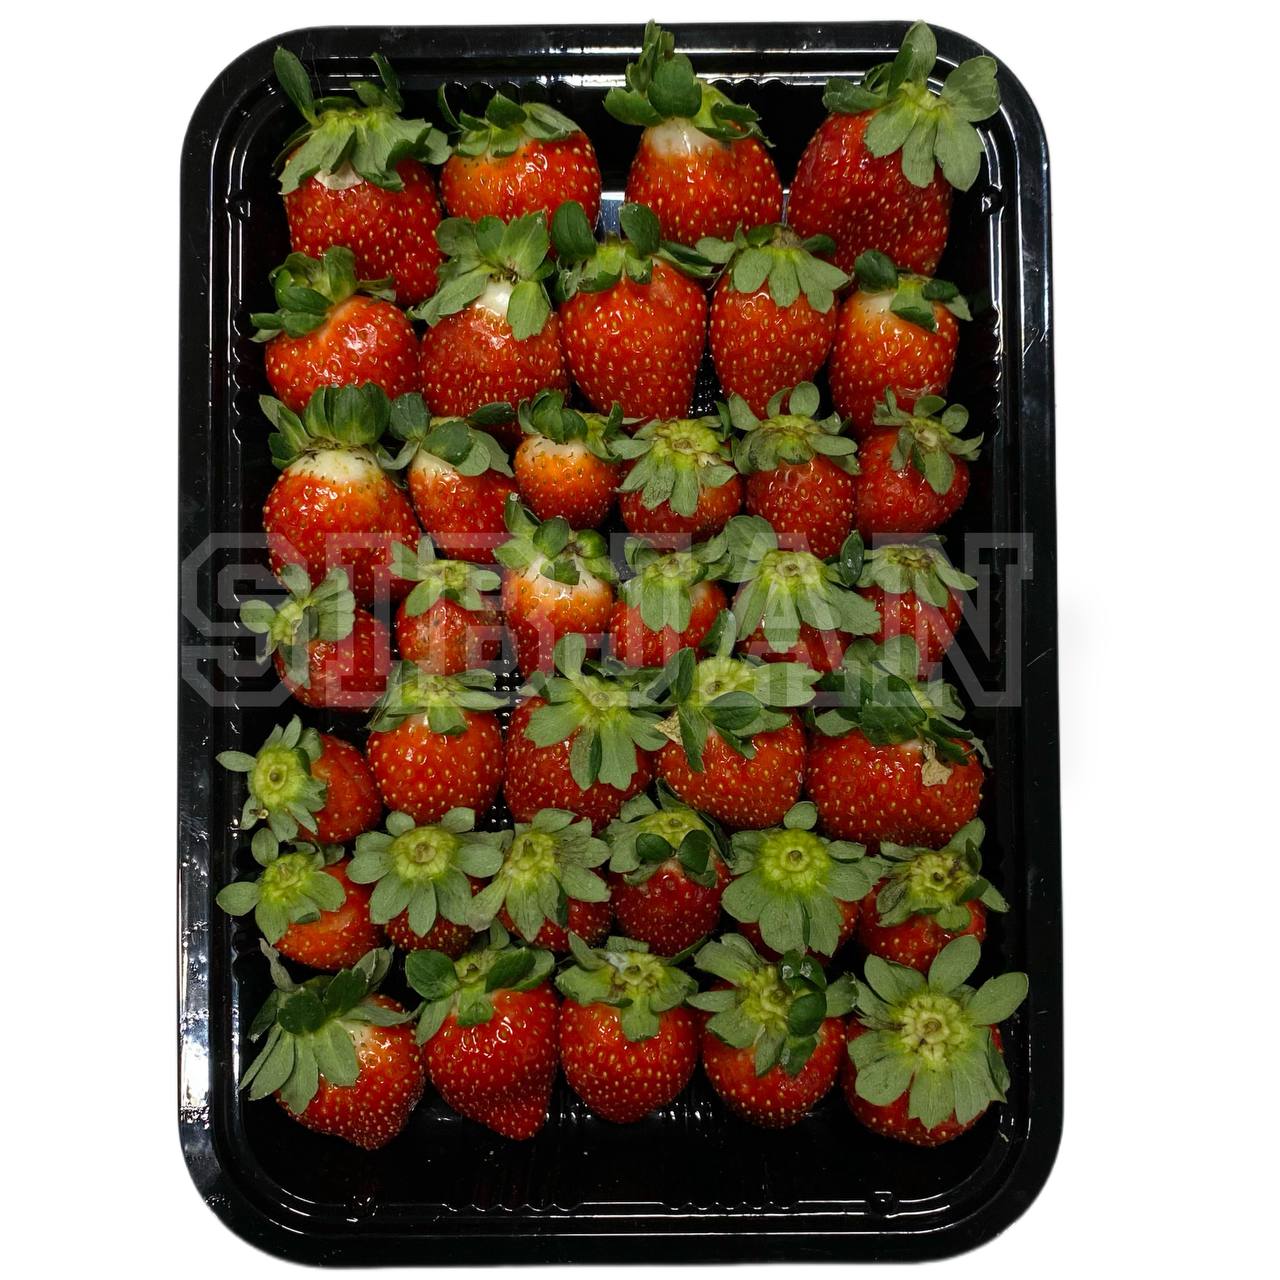 توت فرنگی درجه یک - 200 گرم strawberry_online buy_strawberry | فروشگاهآنلاین میوه و صیفی جات سیب جان